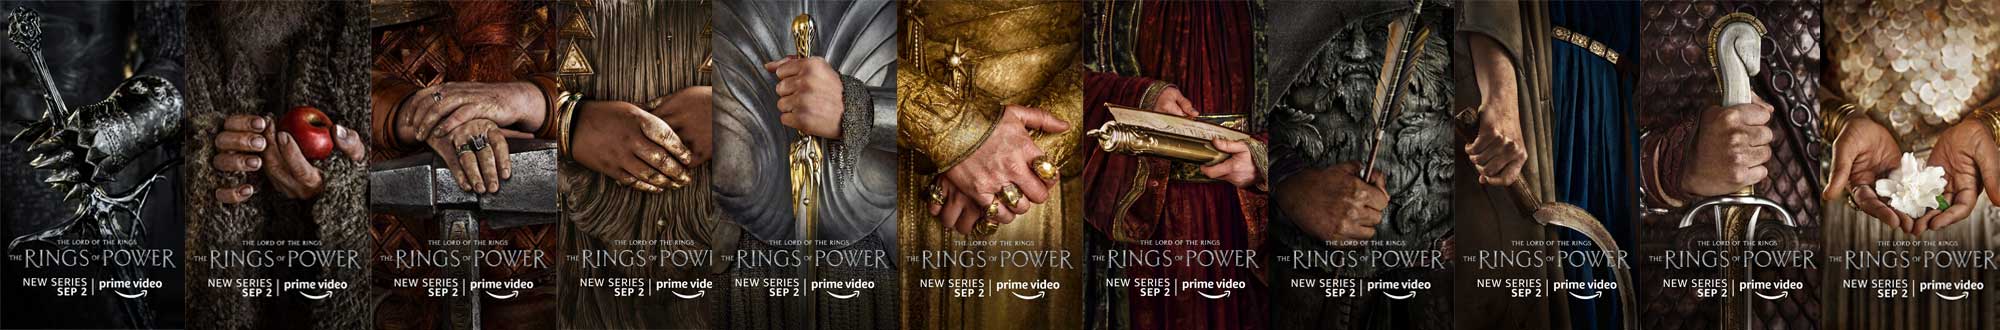 Herr der Ringe - Rings of Power Posters